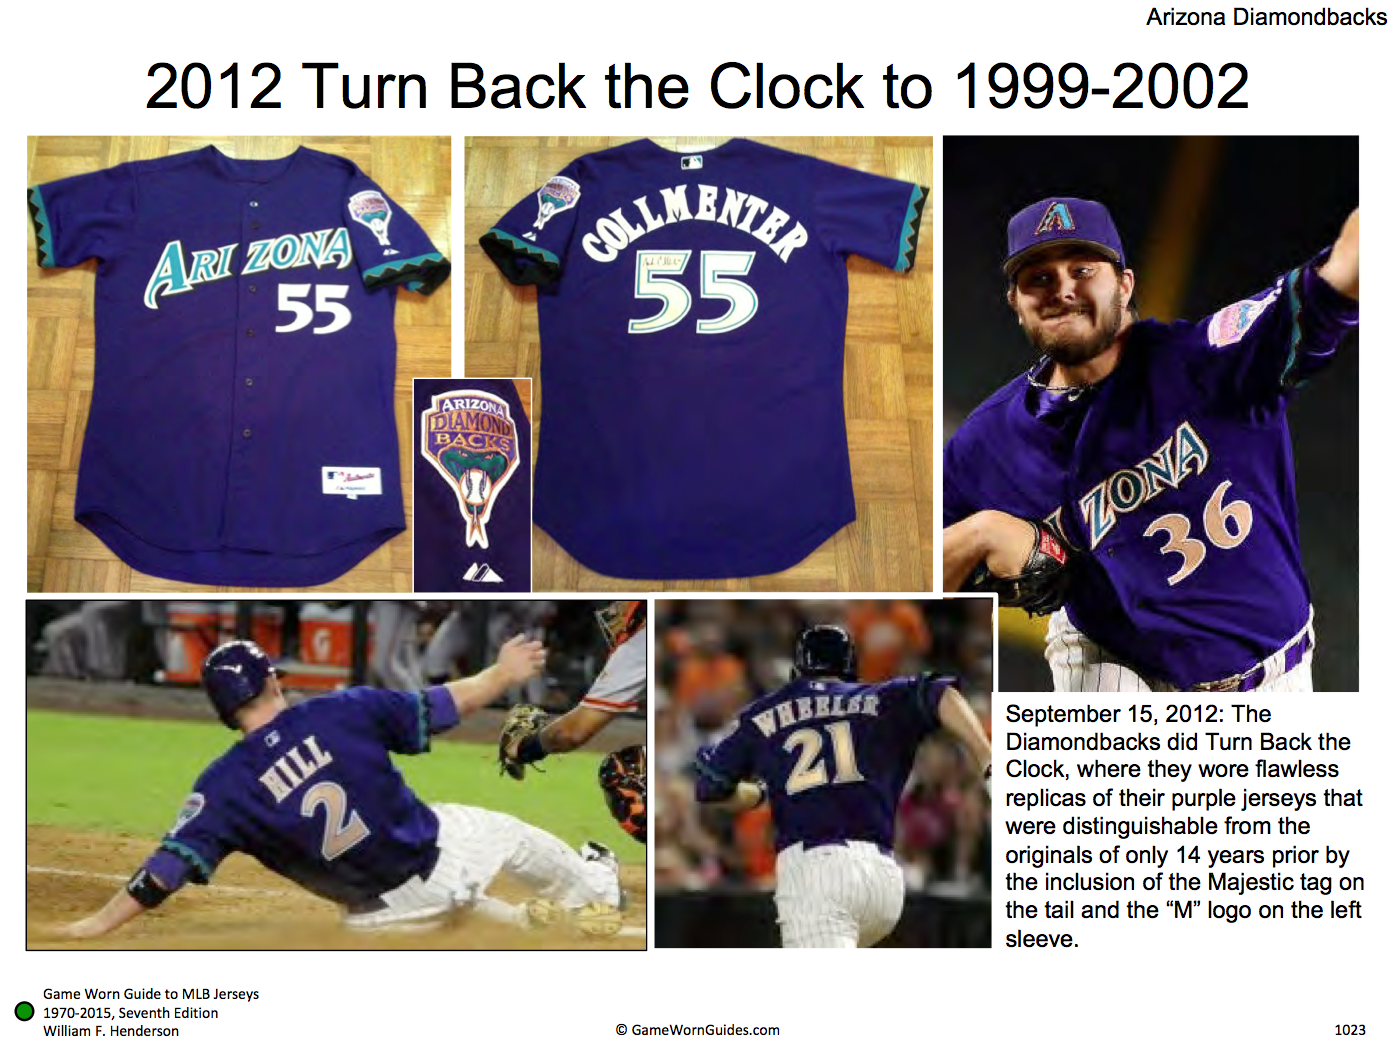 Should more teams bring back vest jerseys? 👀 #Diamondbacks #Throwback #MLB  #Baseball